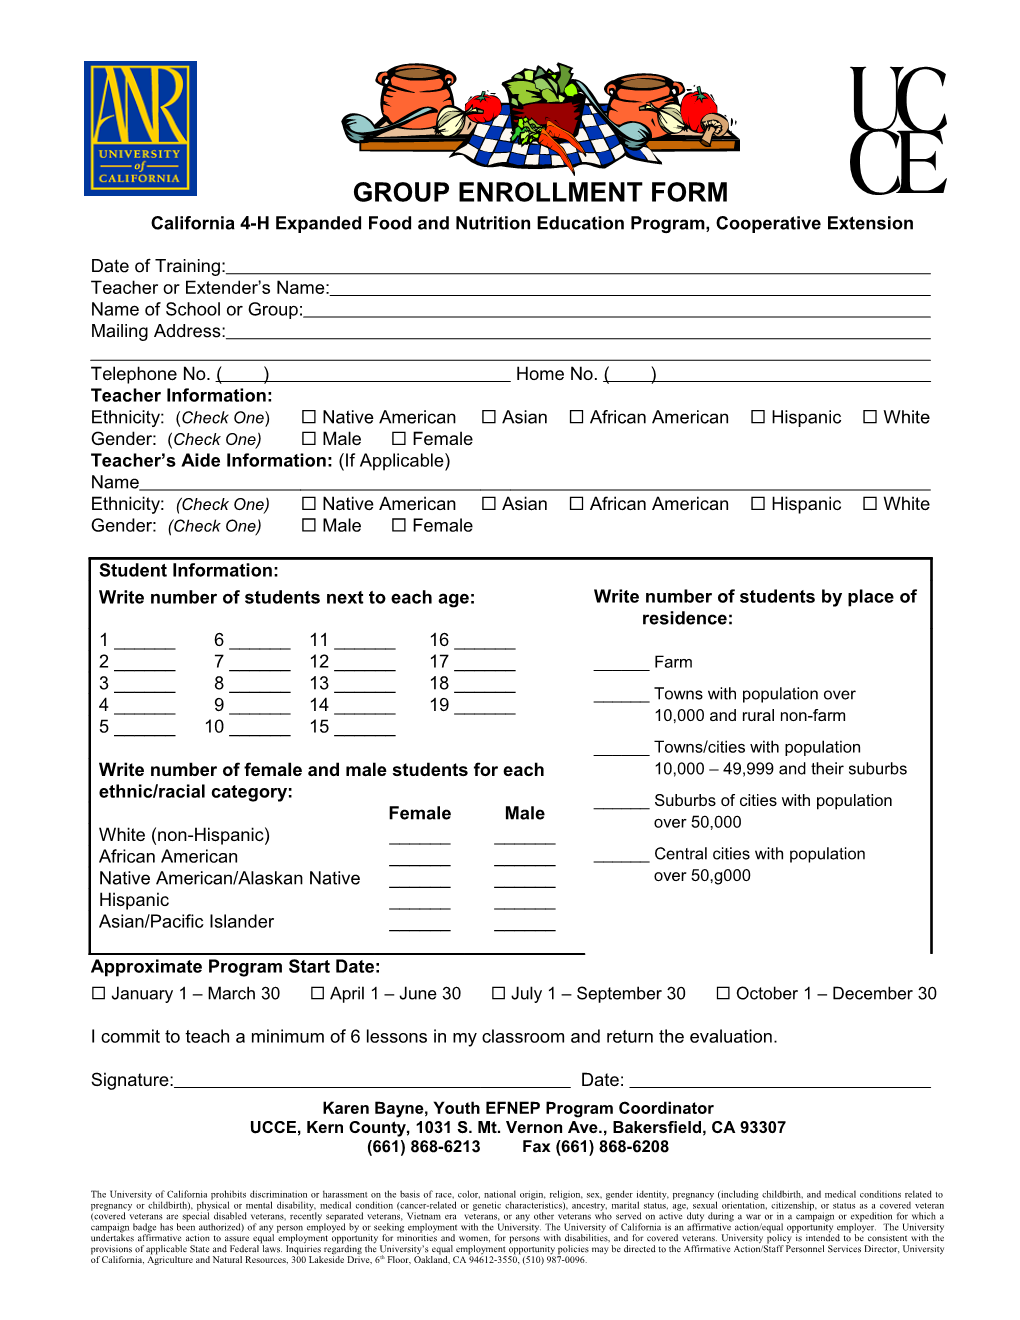 Group Enrollment Form